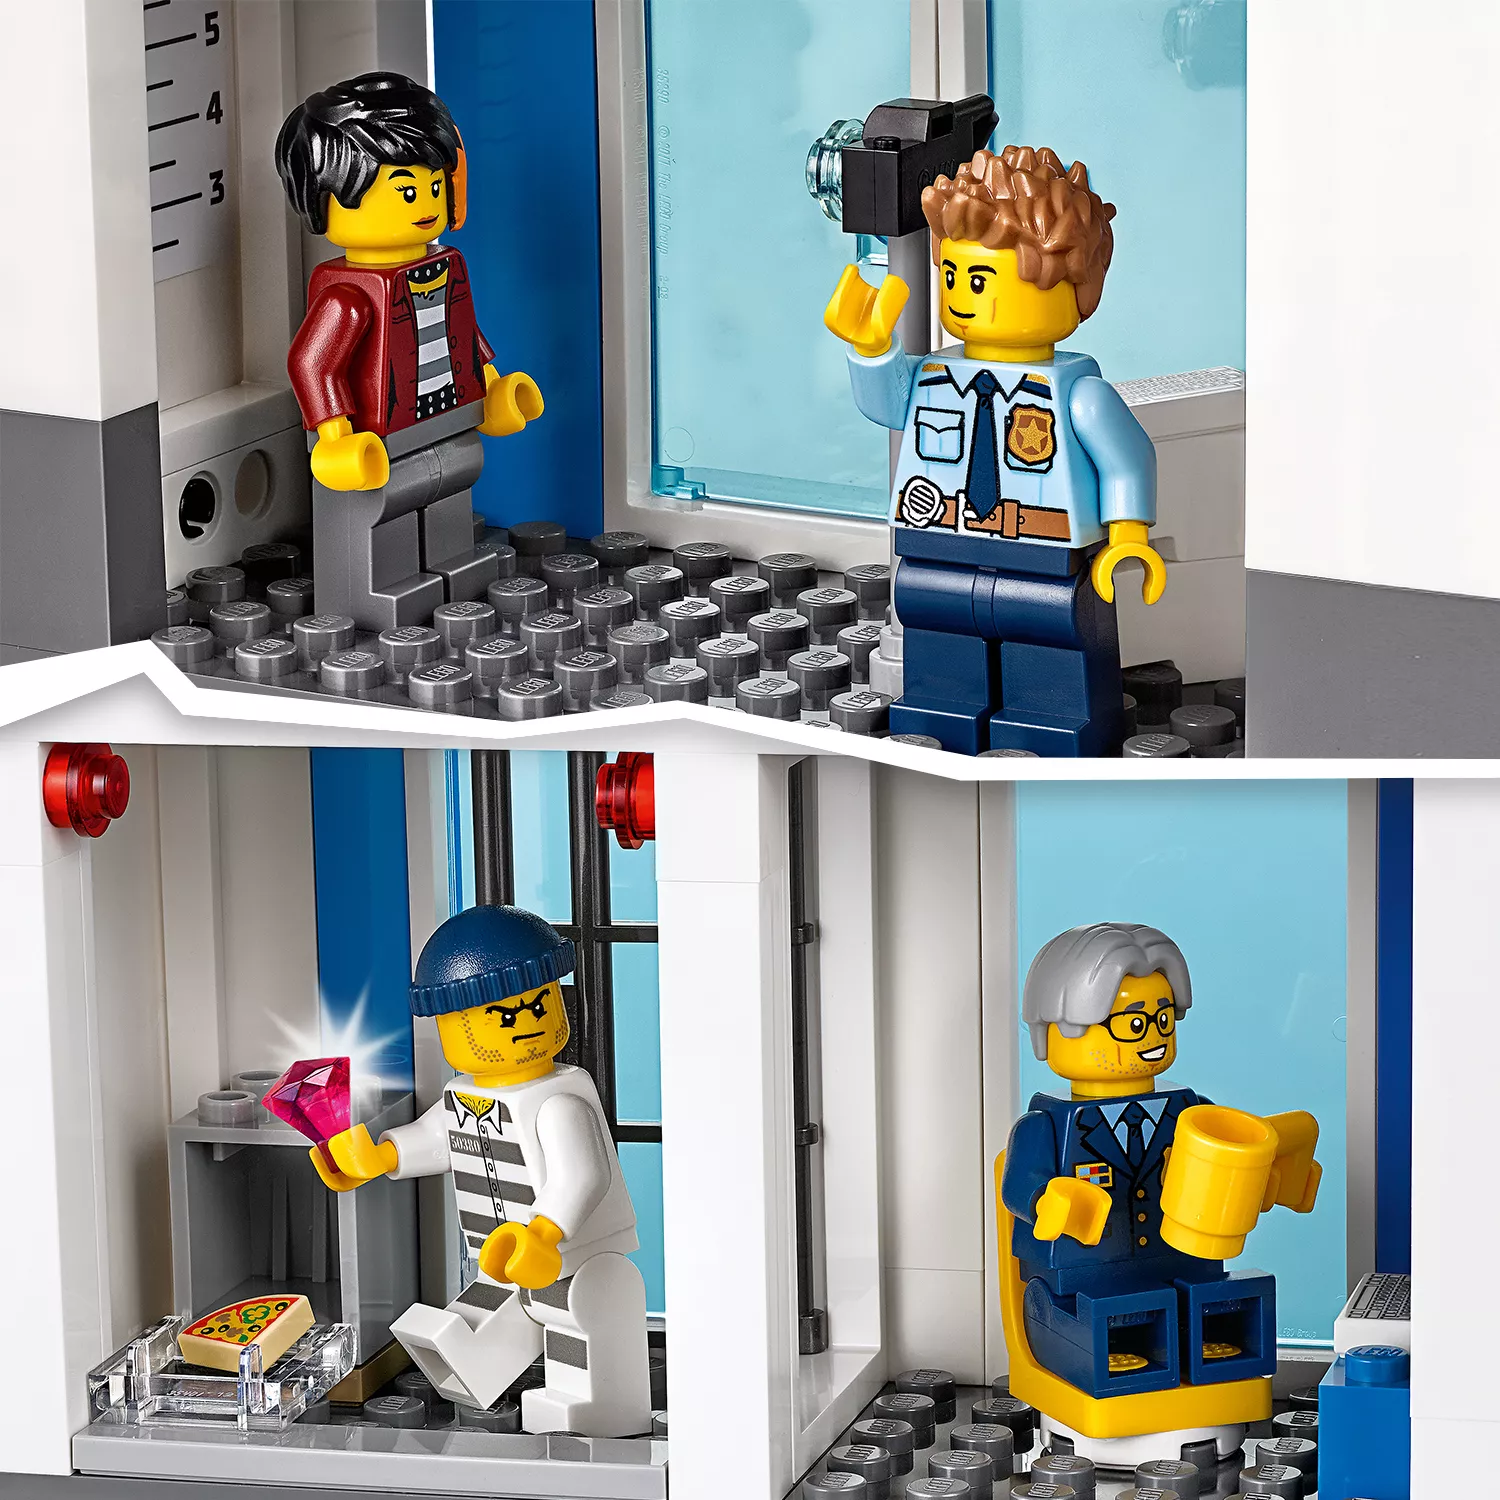 LEGO City Polizeistation